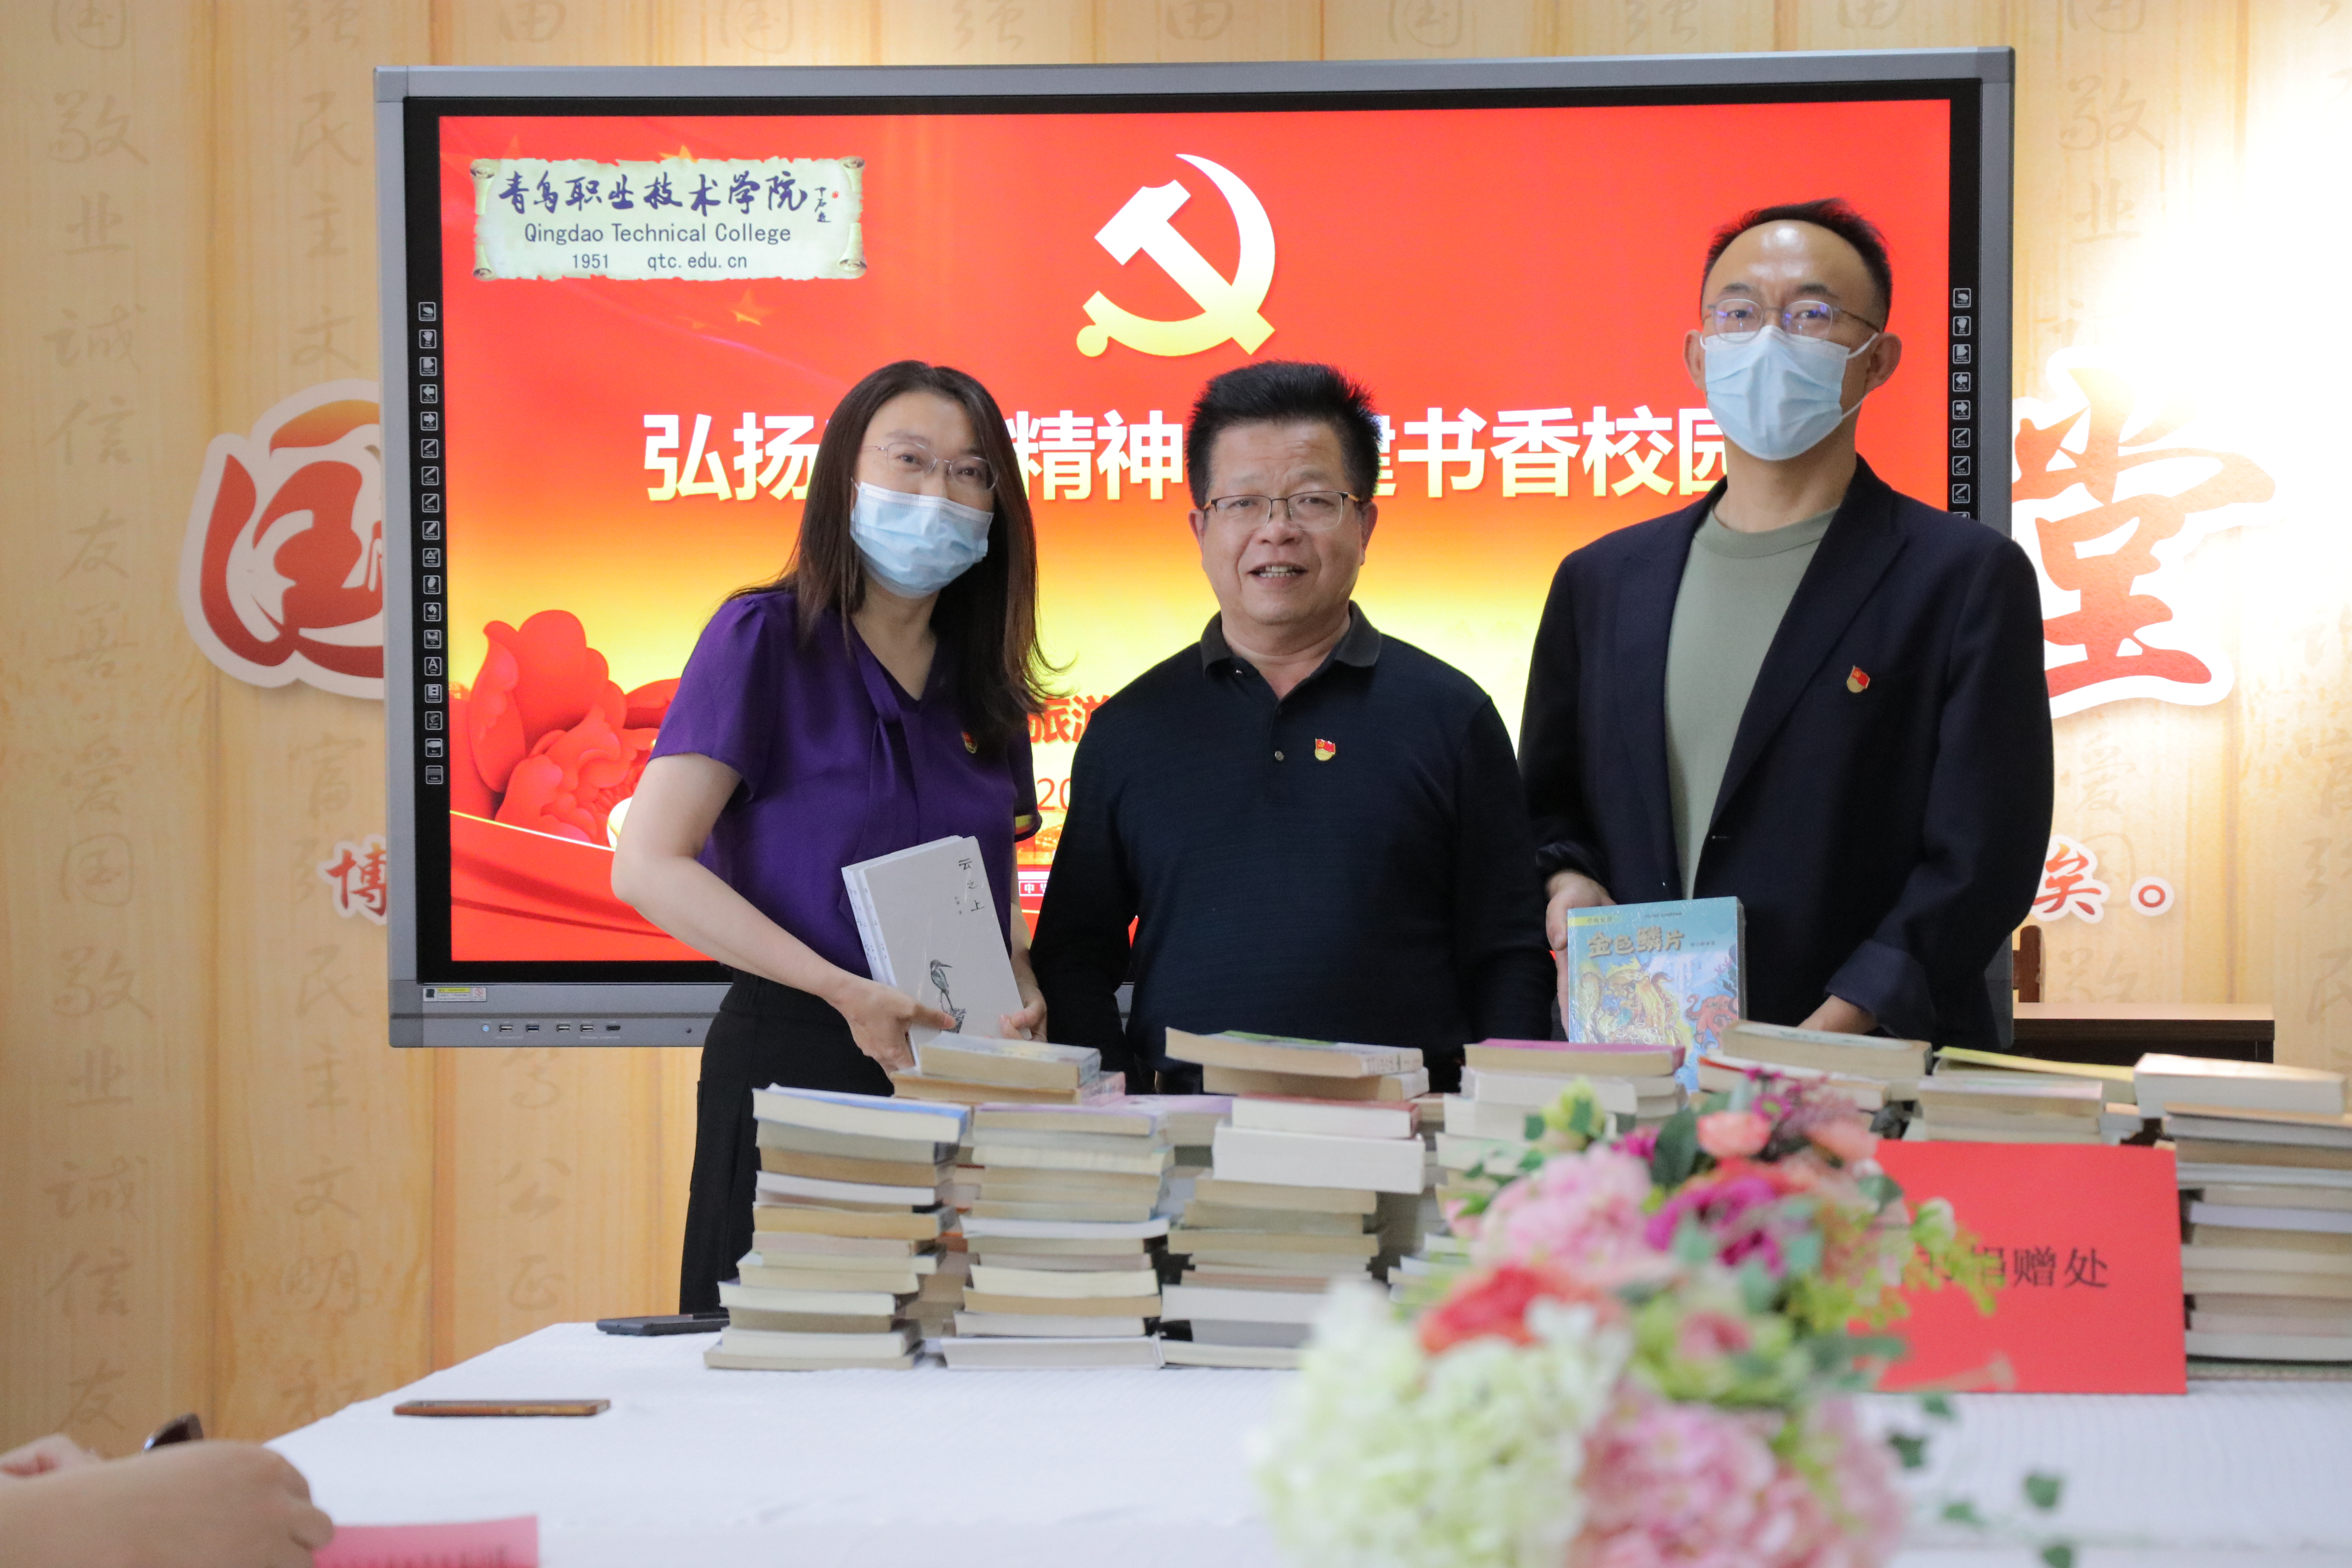 图二孙娈教授和李涛博士向学校图书馆捐赠个人著作.jpg